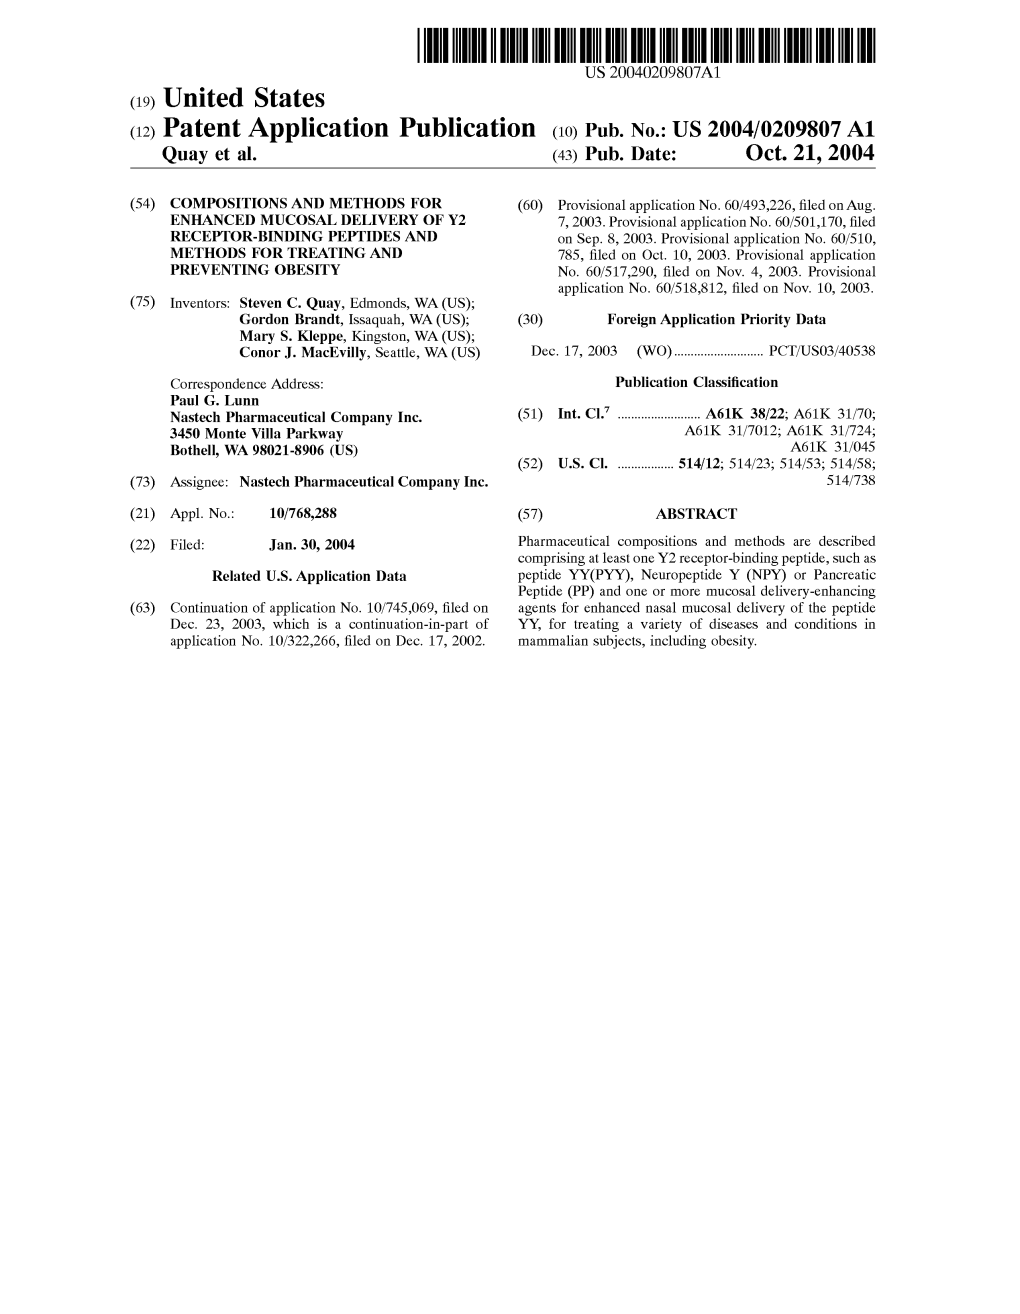 (12) Patent Application Publication (10) Pub. No.: US 2004/0209807 A1 Quay Et Al